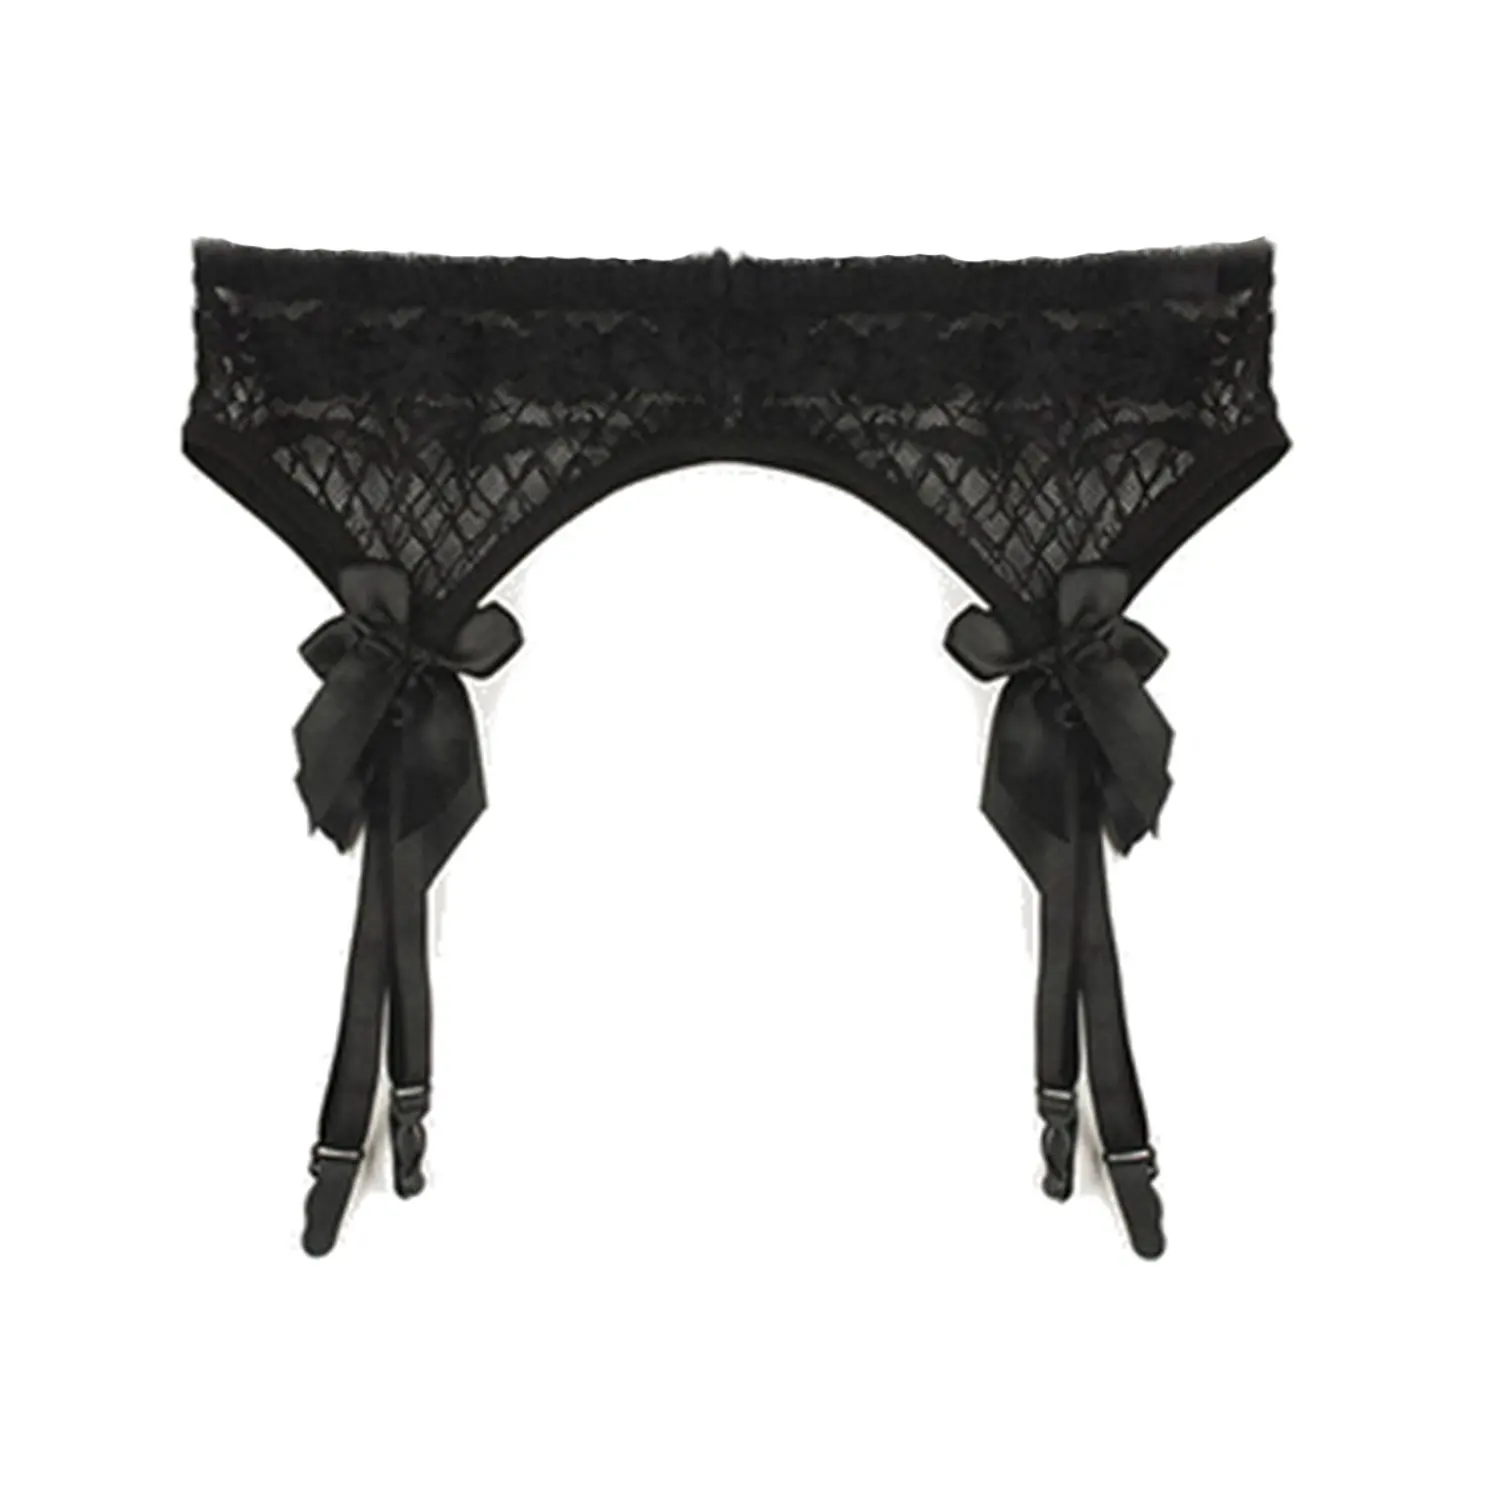 Buy ICSTH Women Garter Belts Mesh Lace Suspender Belt Pantyhose For ...